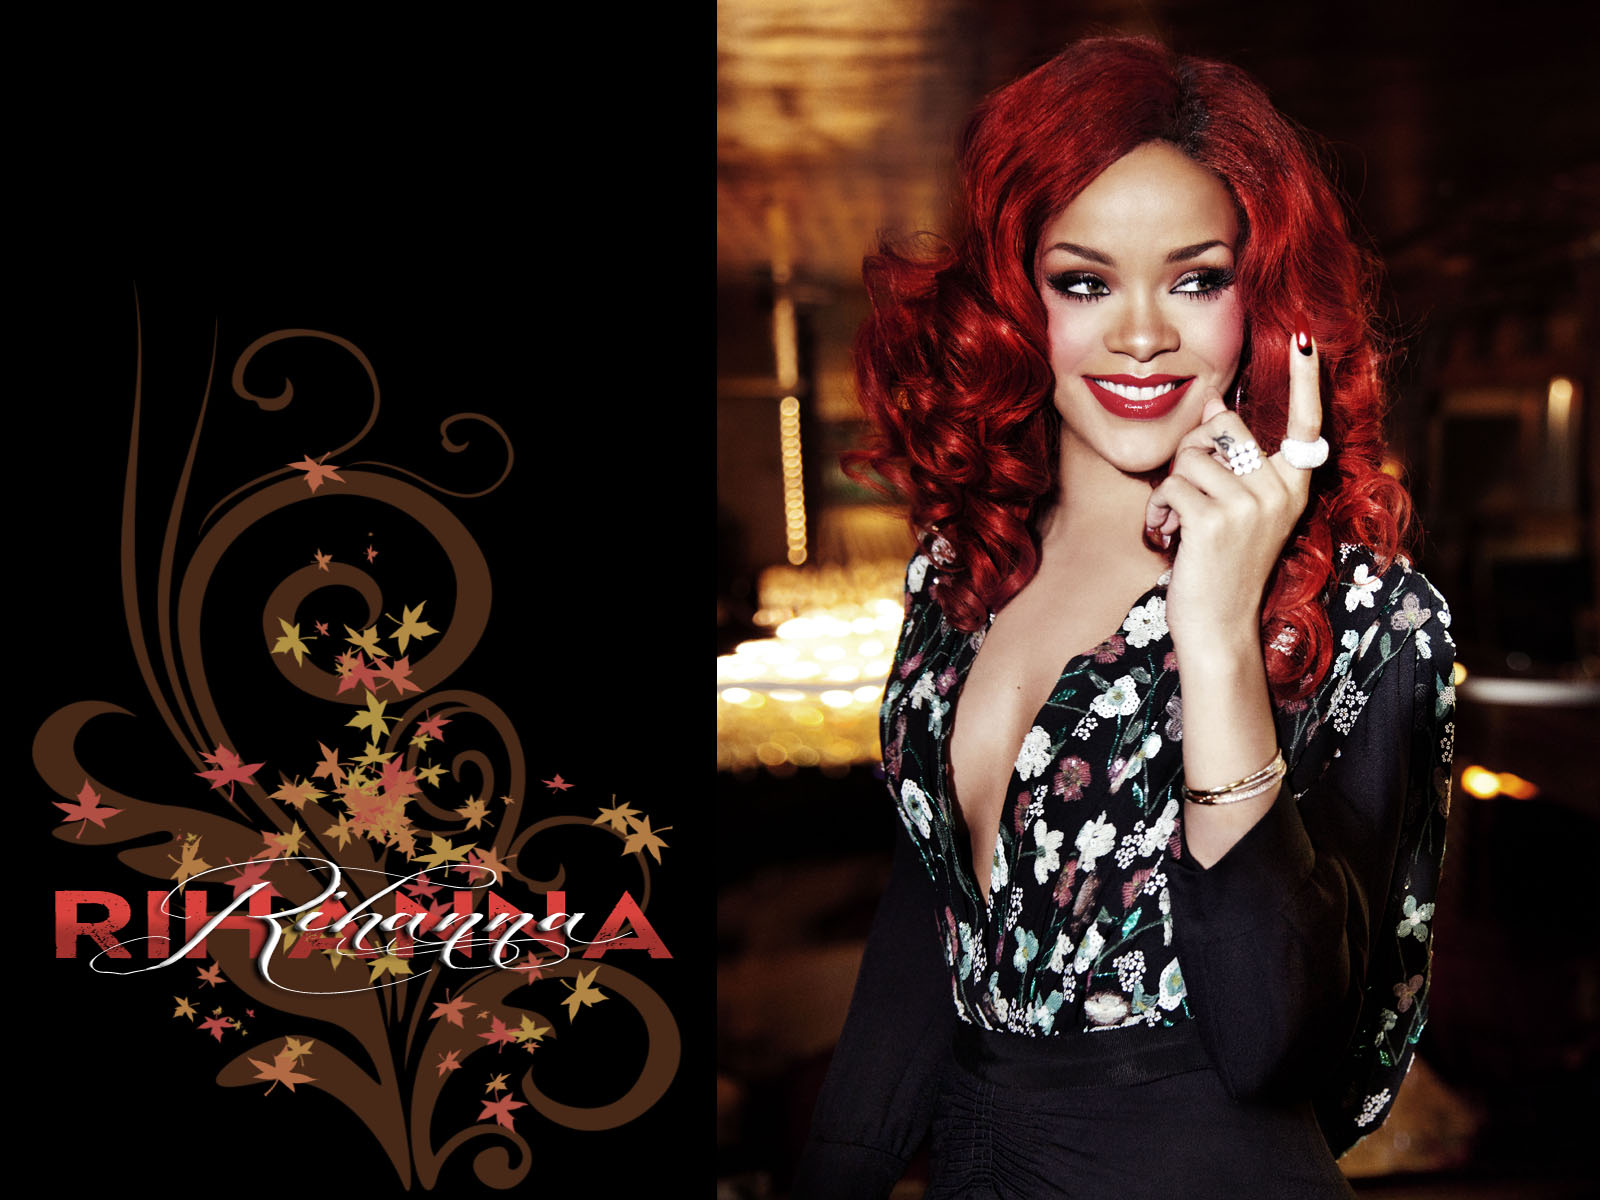 Background for desktop: Rihanna pictures